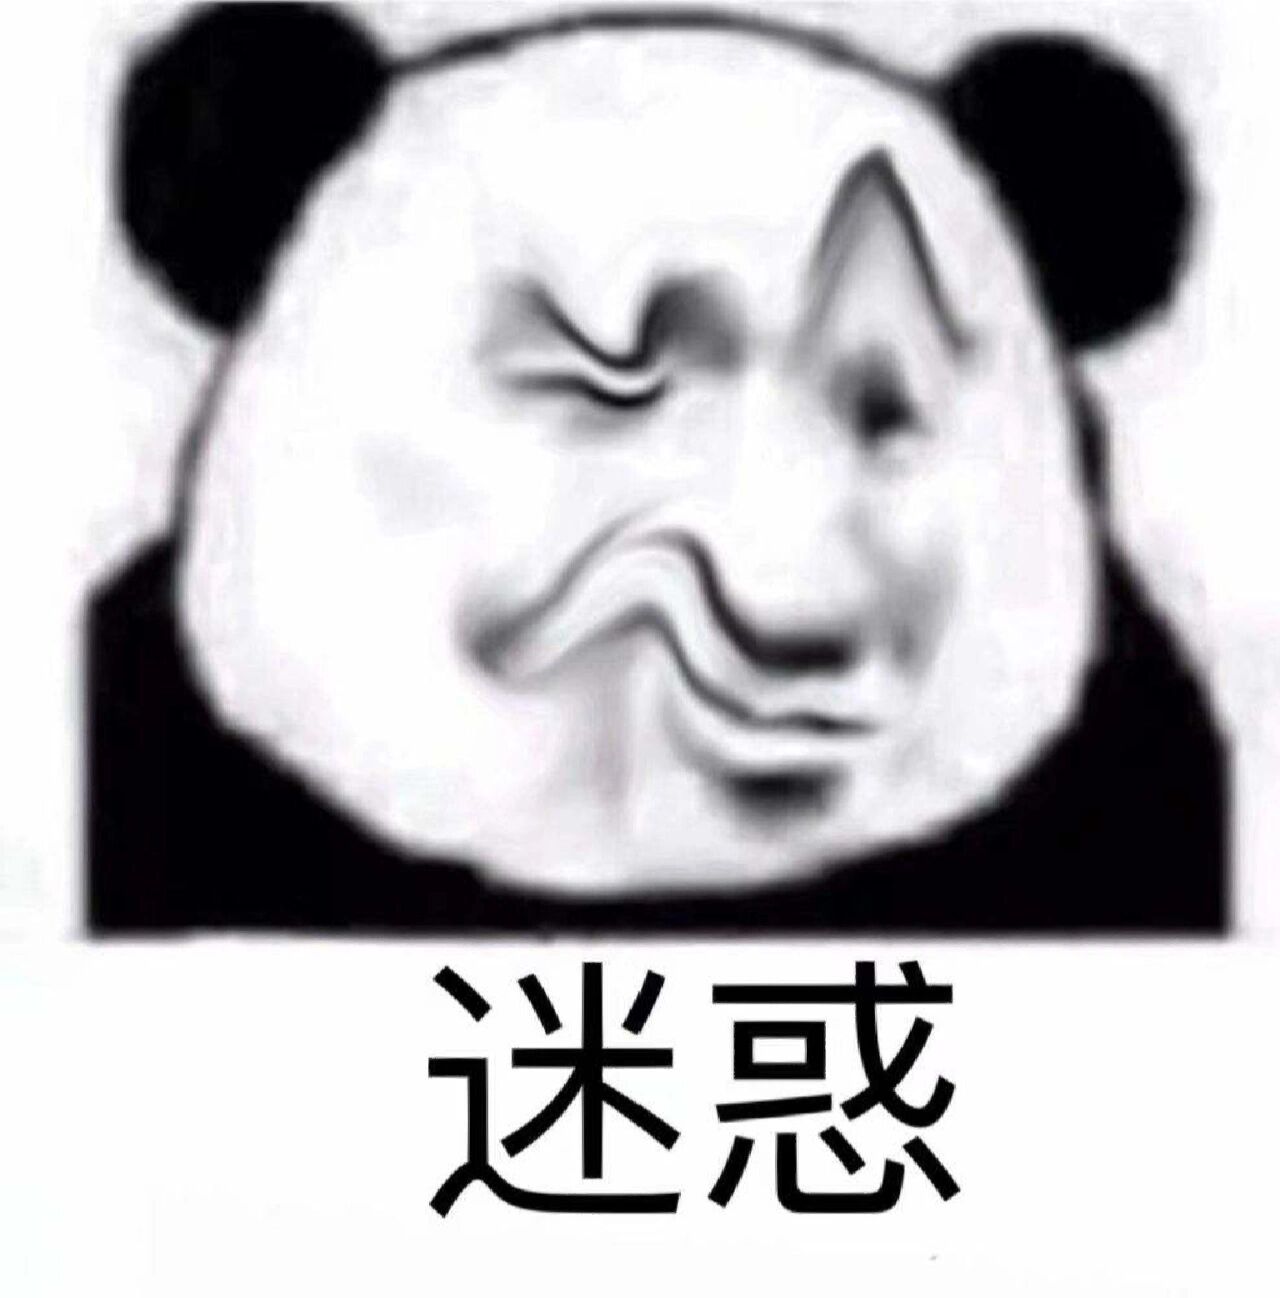 熊猫头表情包沙雕好使图片